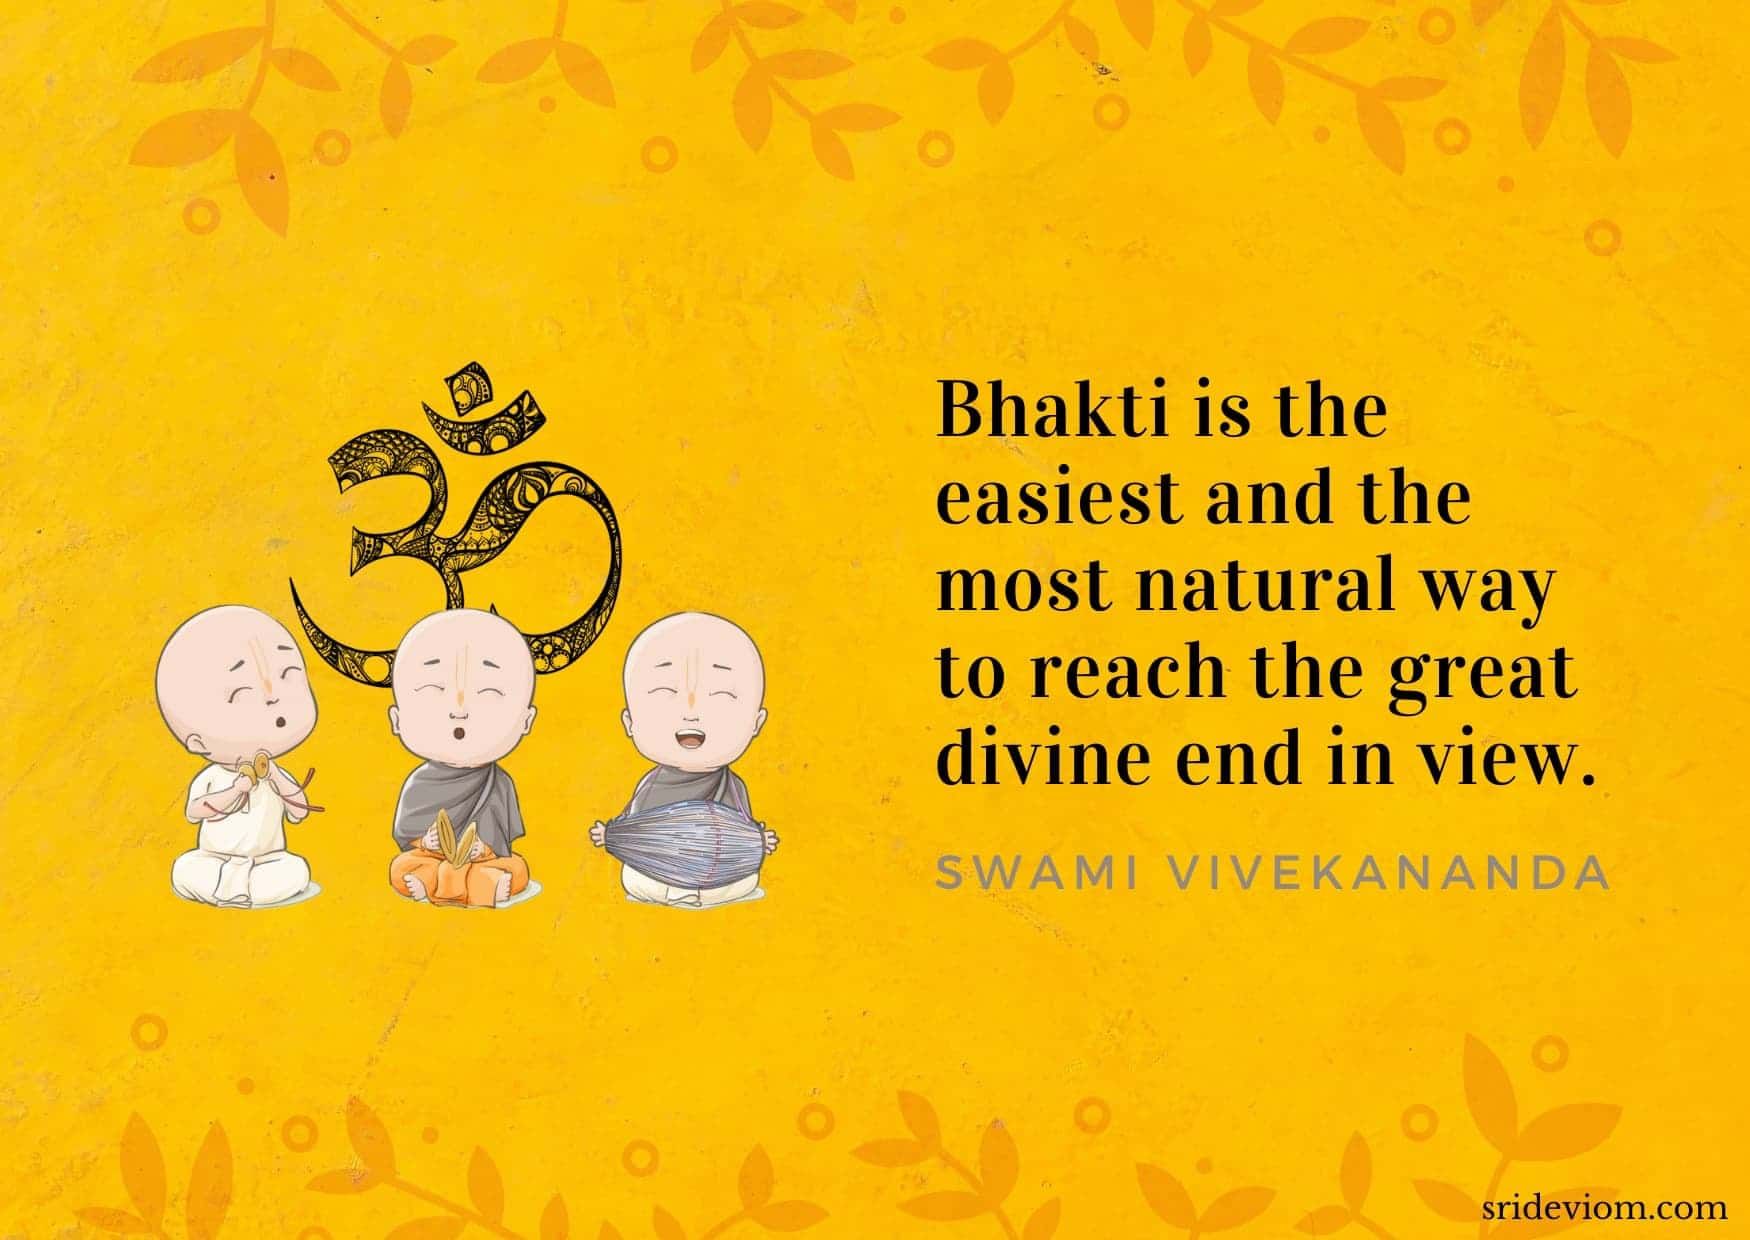 The skill of bhakti for awakening 1